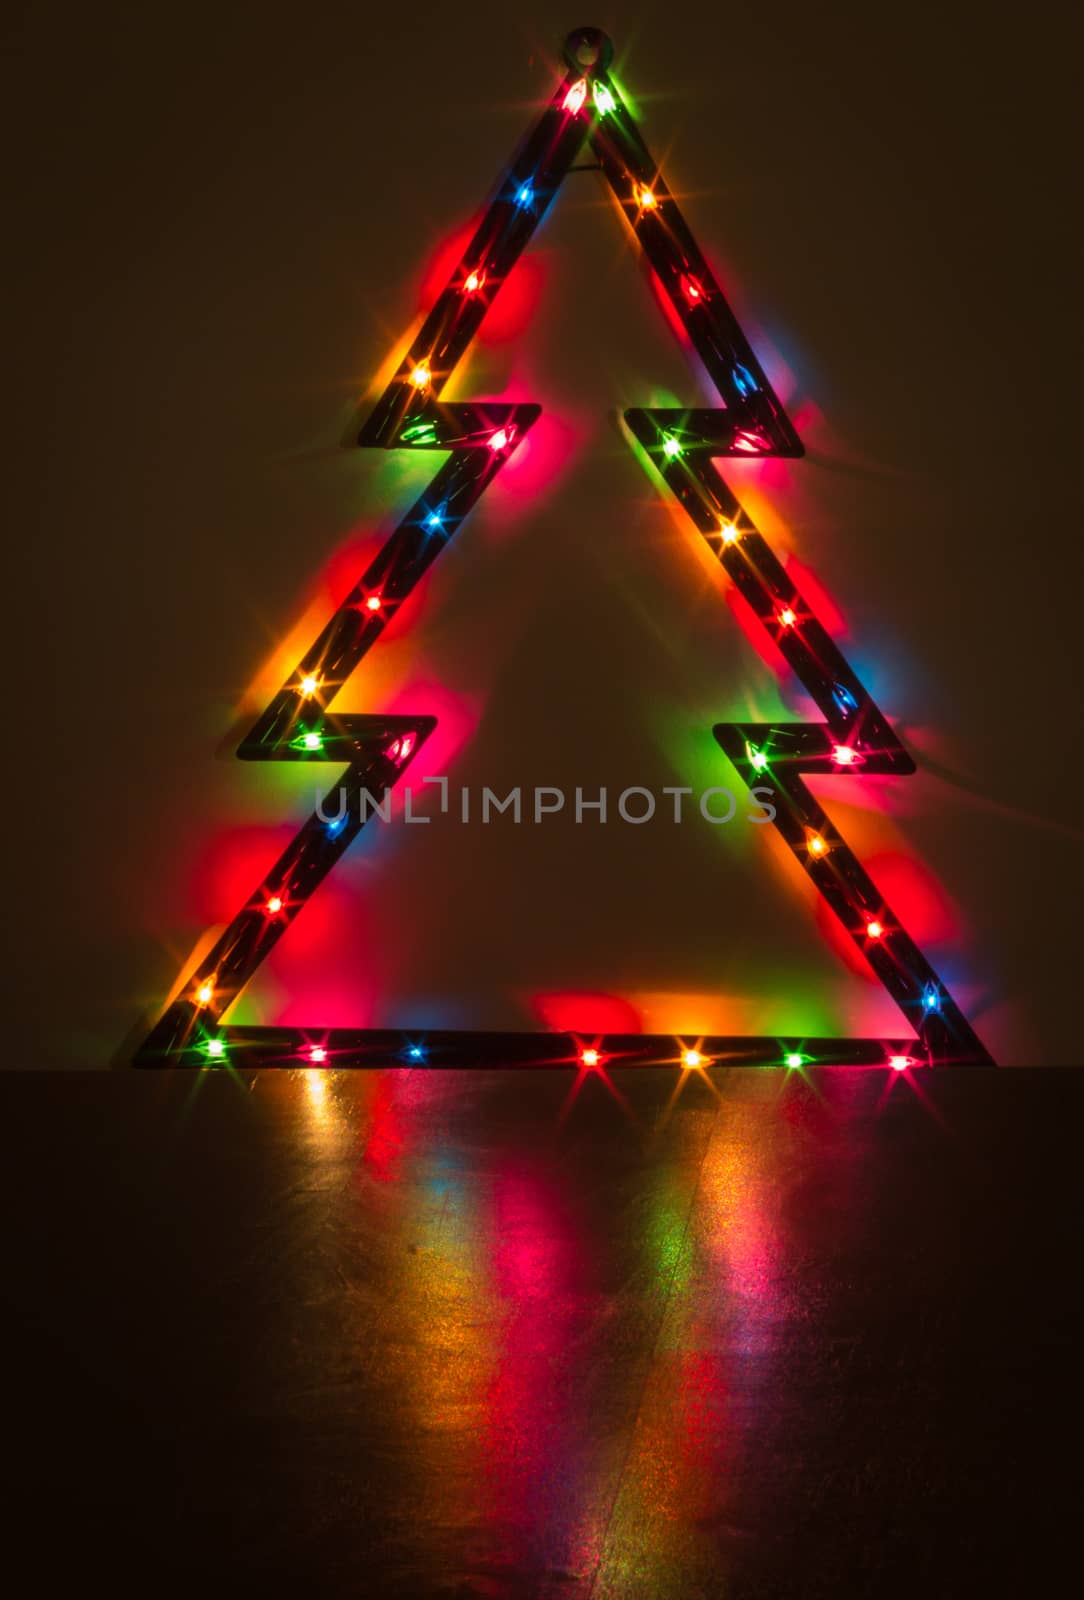 Christmas lights on a Christmas tree and its reflection